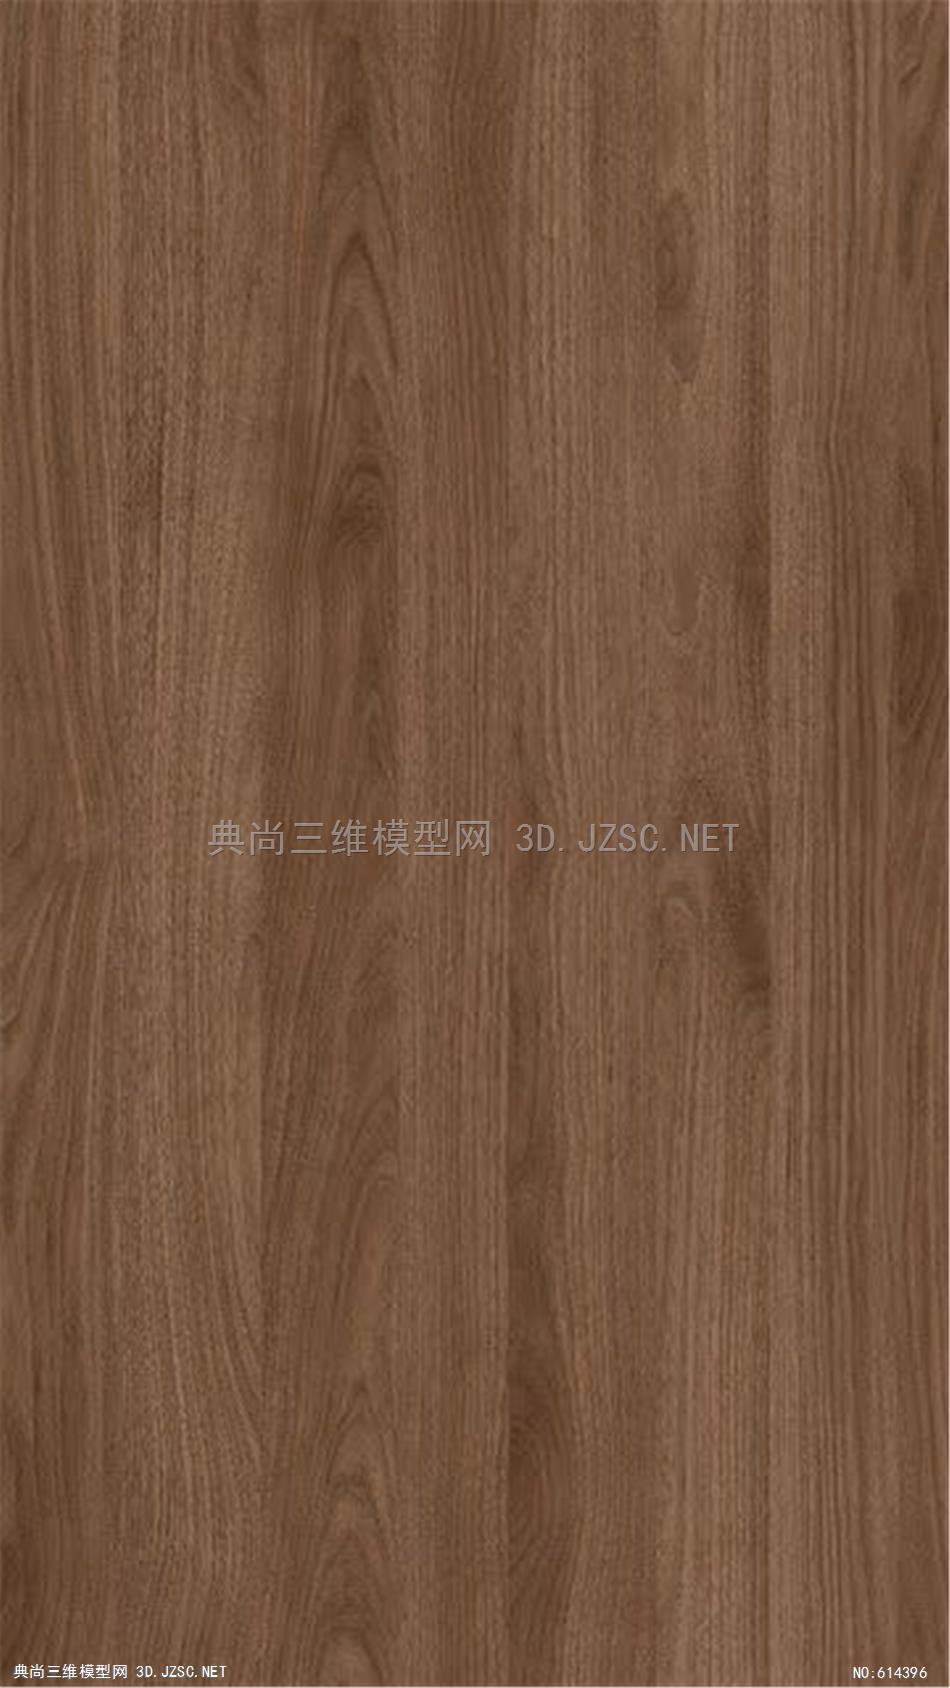 木饰面 木纹 木材  高清材质贴图 (284)